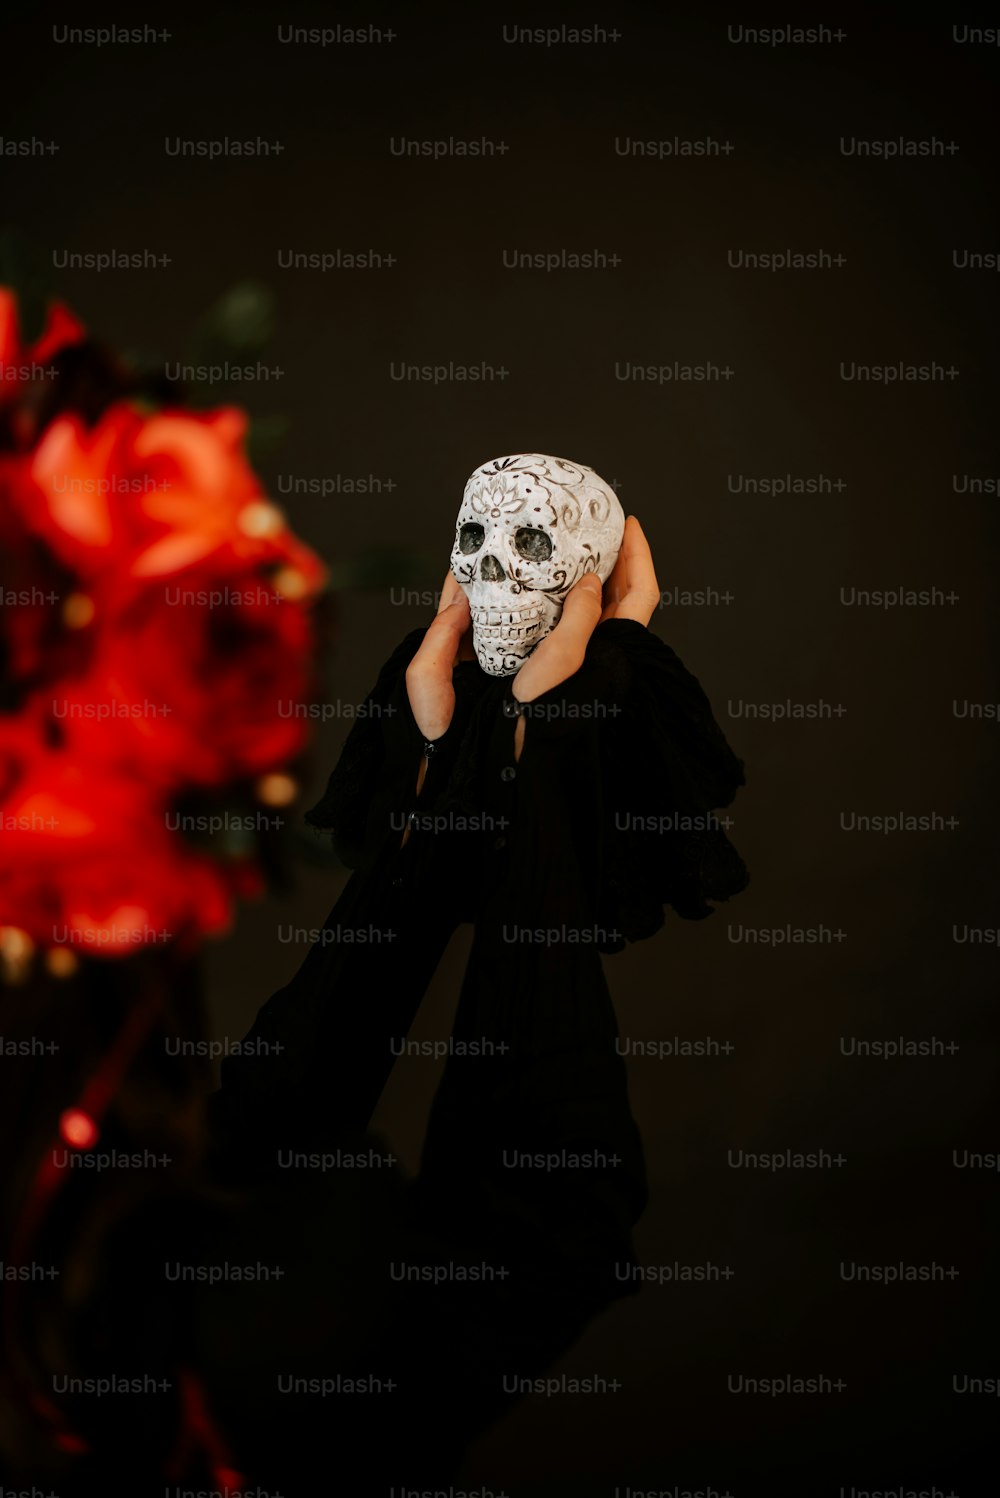 una persona con una maschera bianca che copre il viso